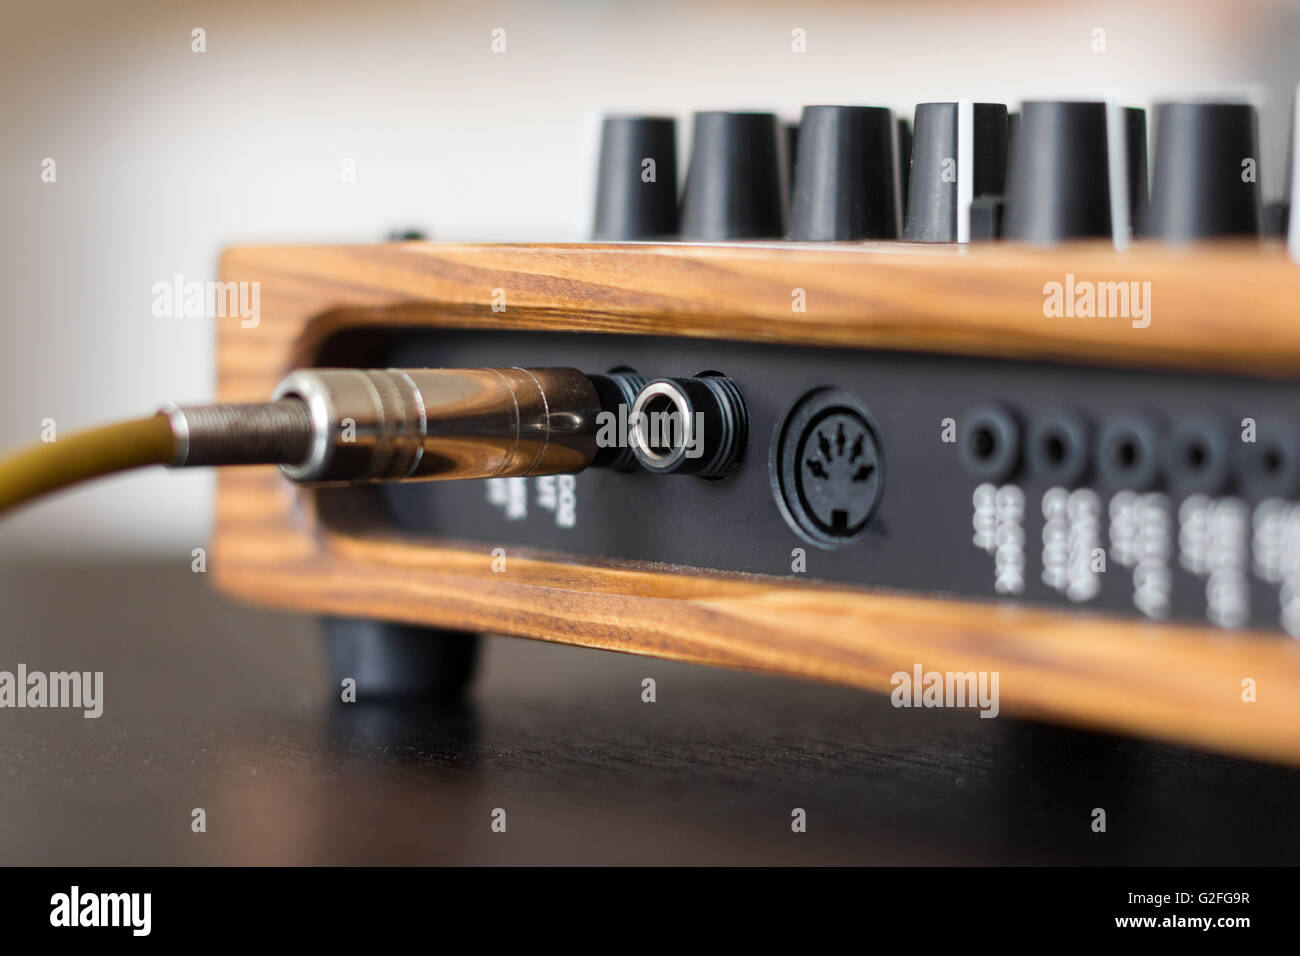 Jack plug cable on synthesizer macro Stock Photo